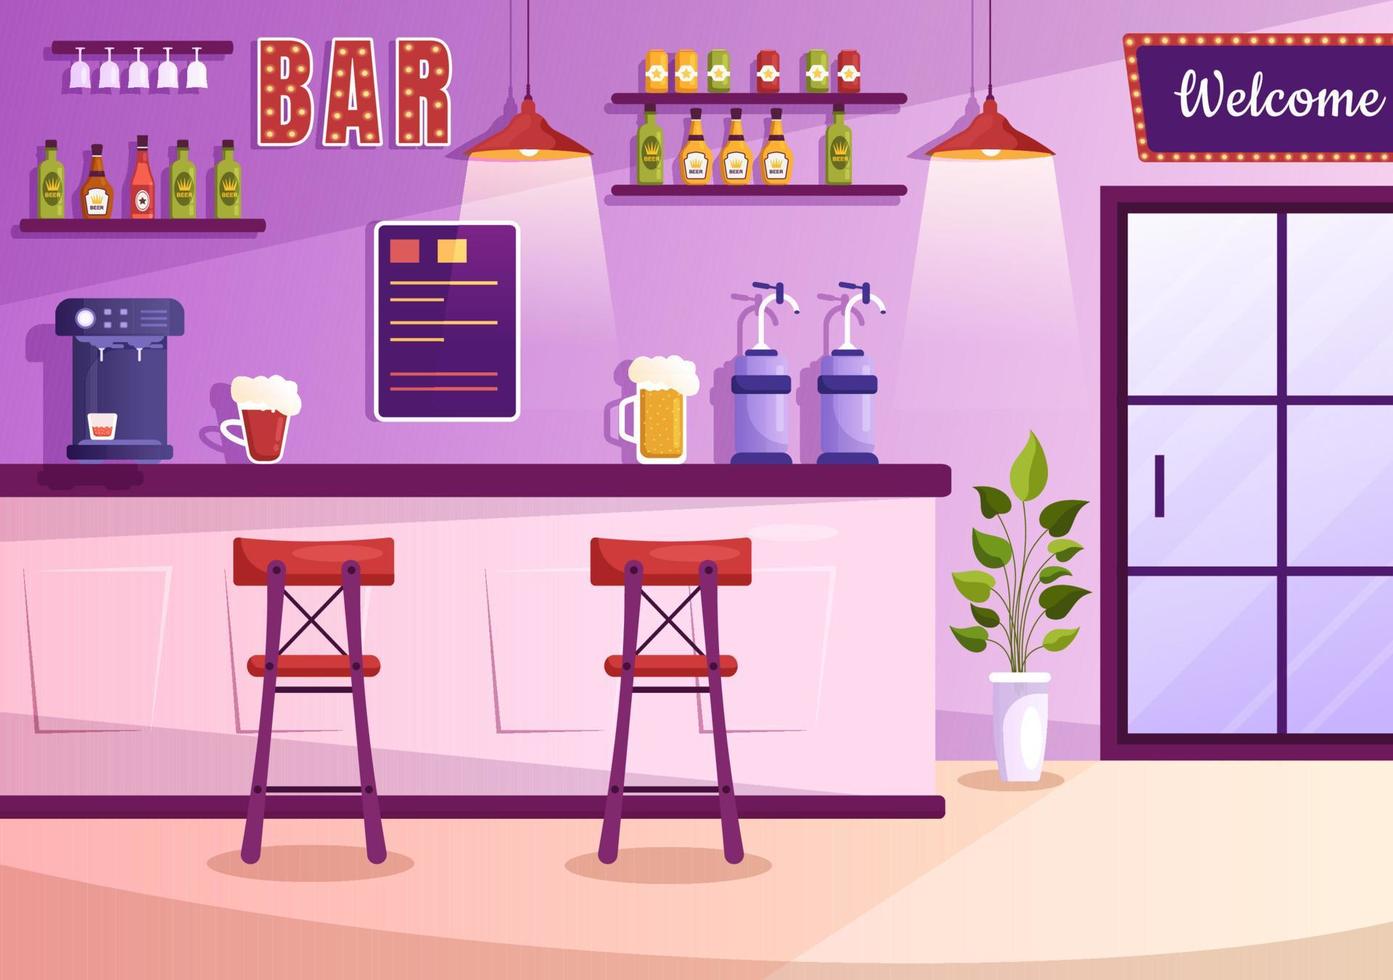 bar ou pub le soir avec bouteilles de boissons alcoolisées, barman, table, intérieur et chaises dans la salle intérieure en illustration de dessin animé plat vecteur